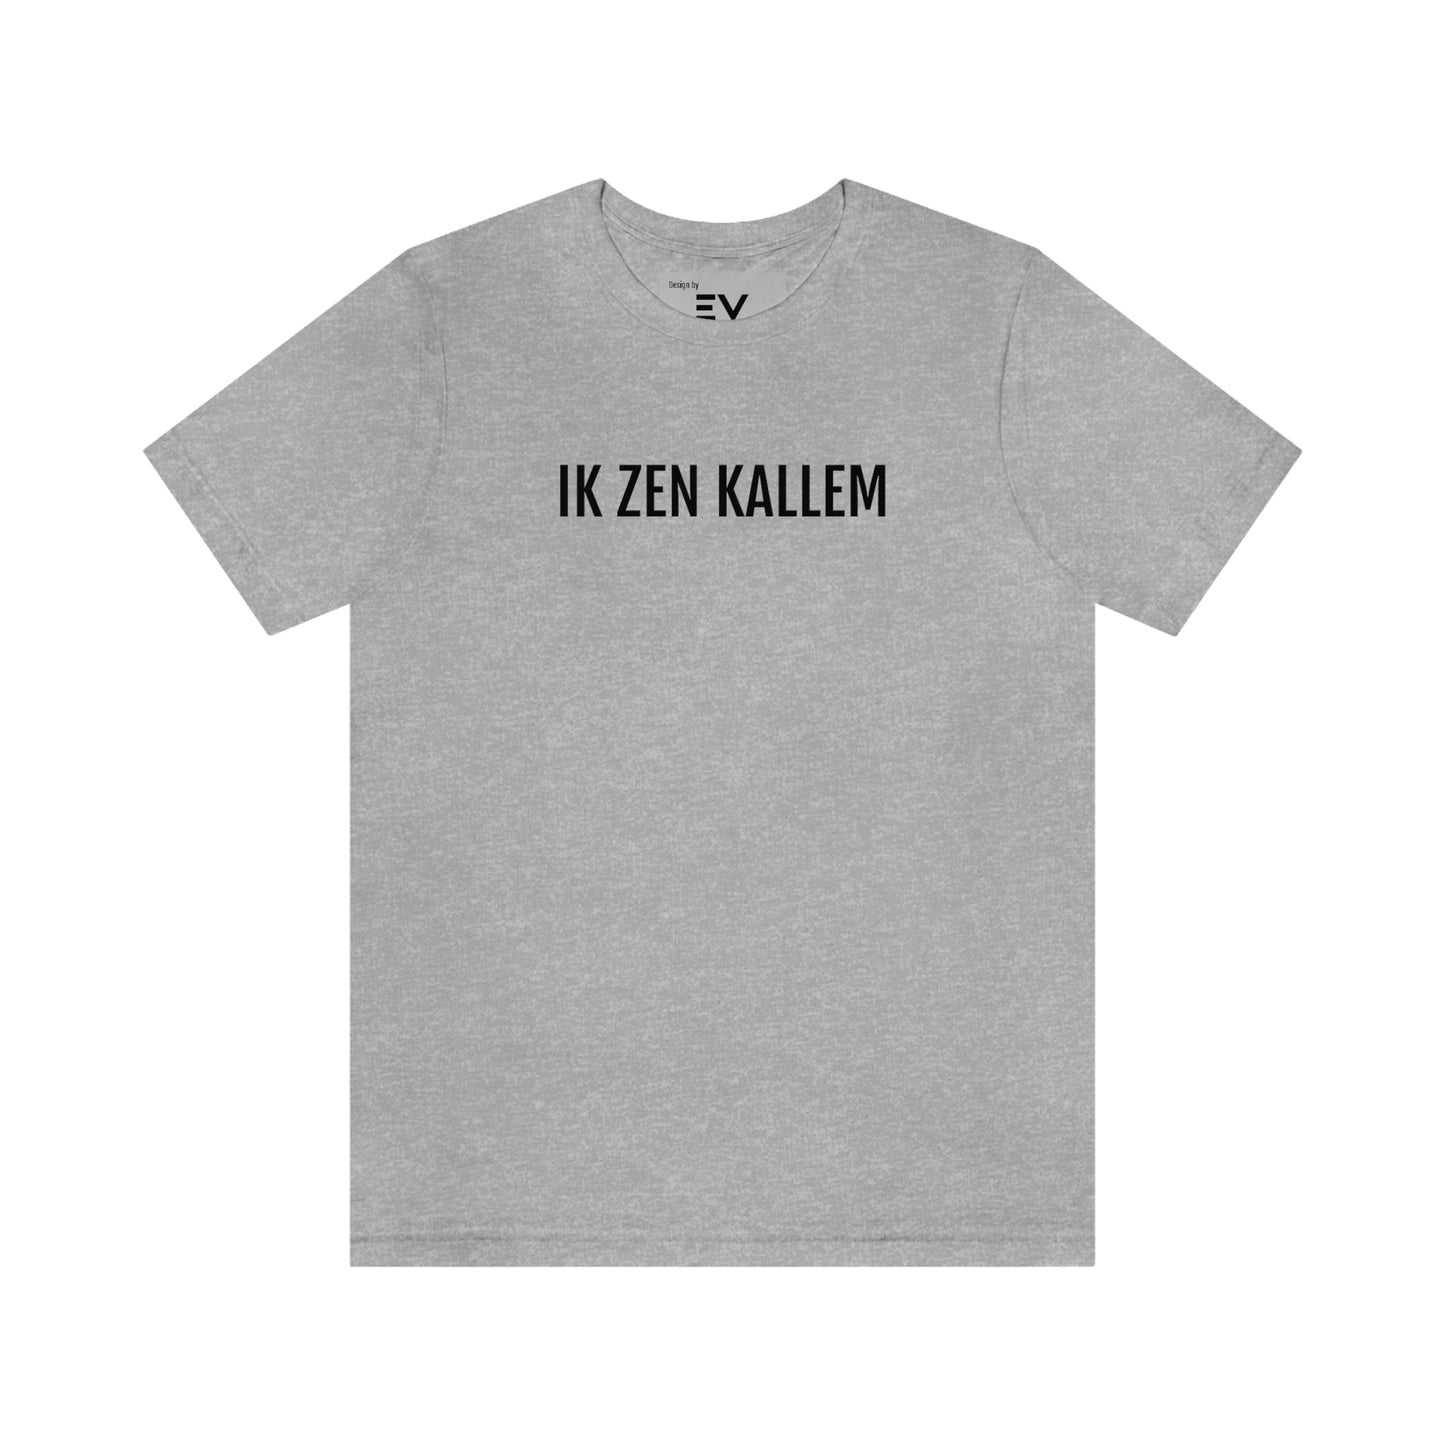 IK ZEN KALLEM | Unisex T-Shirt uit Antwerpen